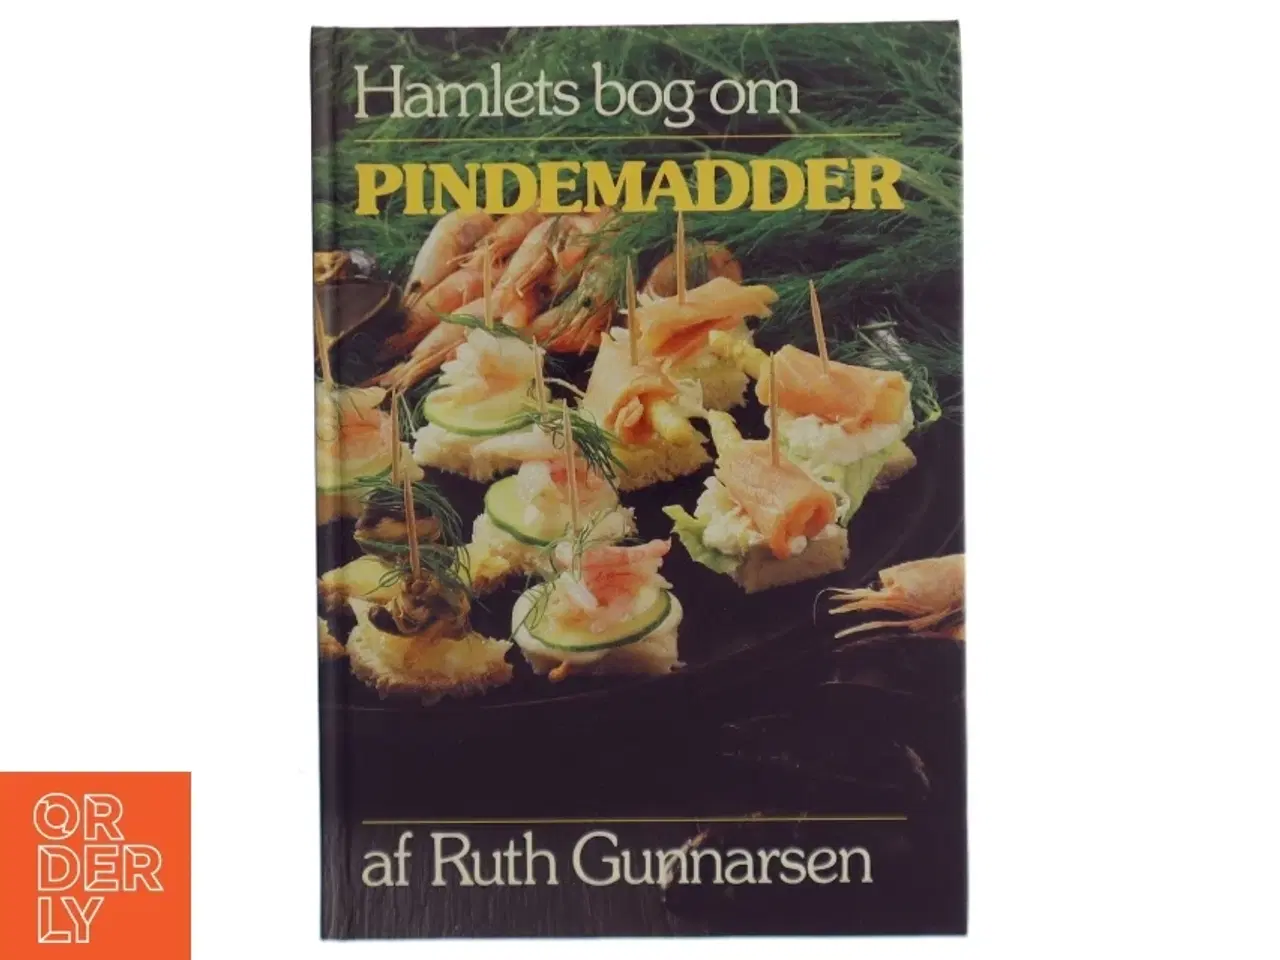 Billede 1 - Kogebog 'Hamlets bog om Pindemadder' af Ruth Gunnarsen